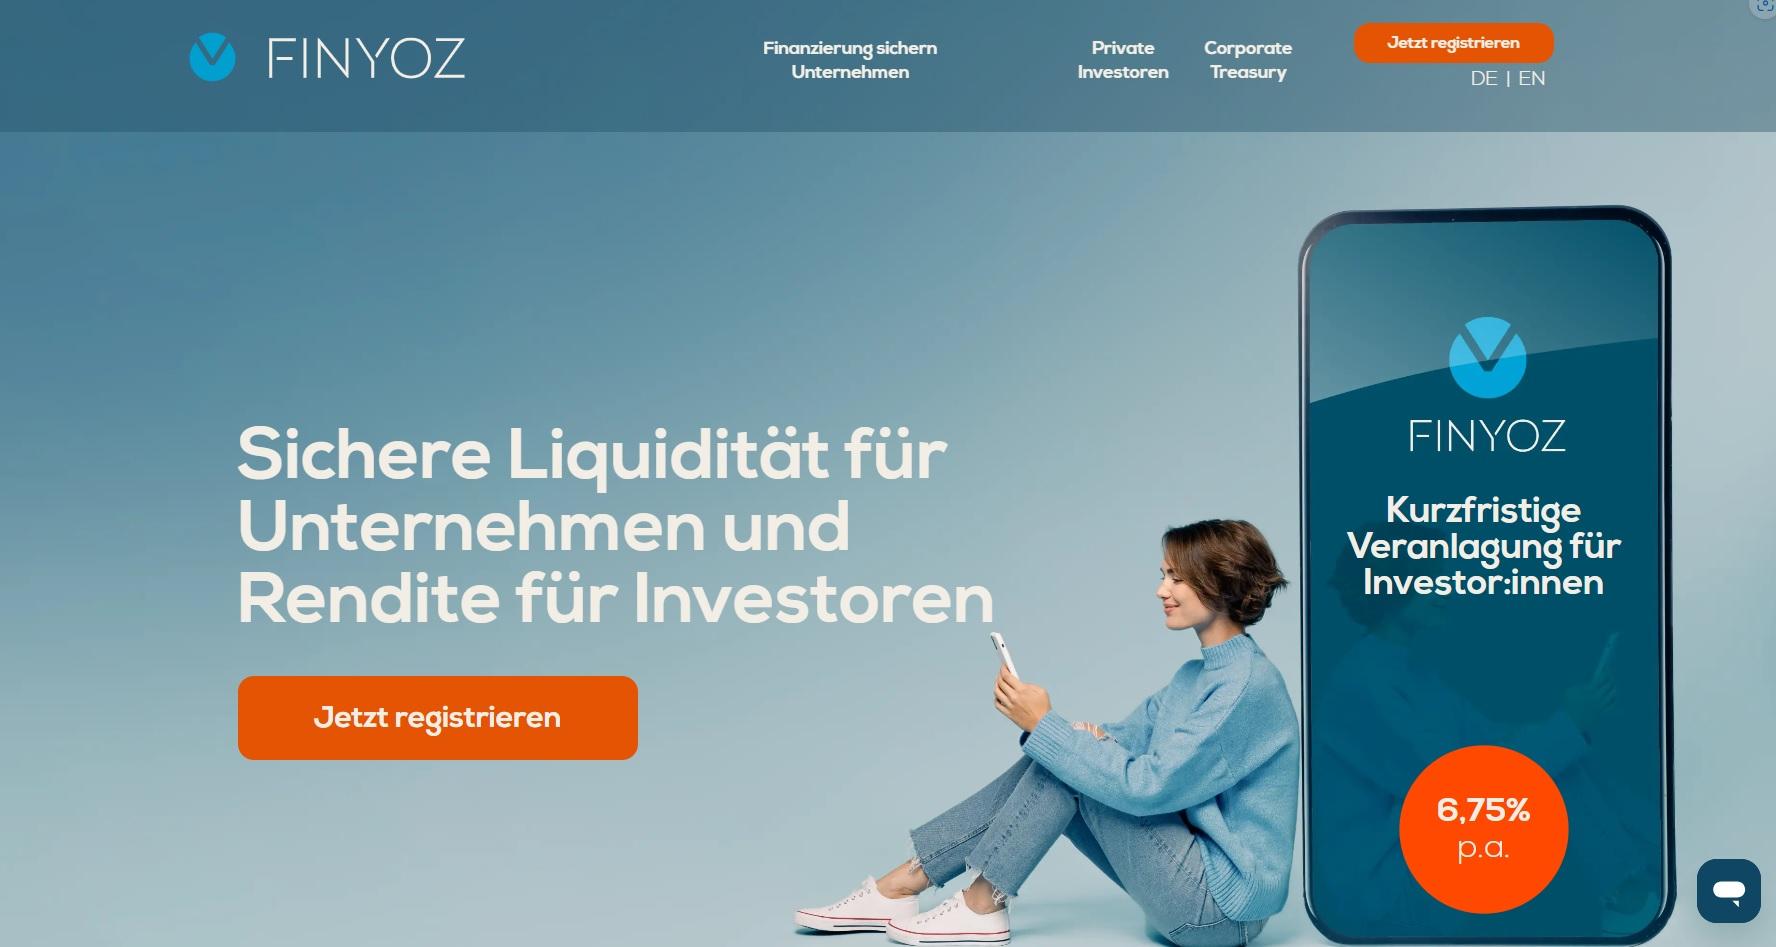 Finyoz Deutschland / startup from München / Background